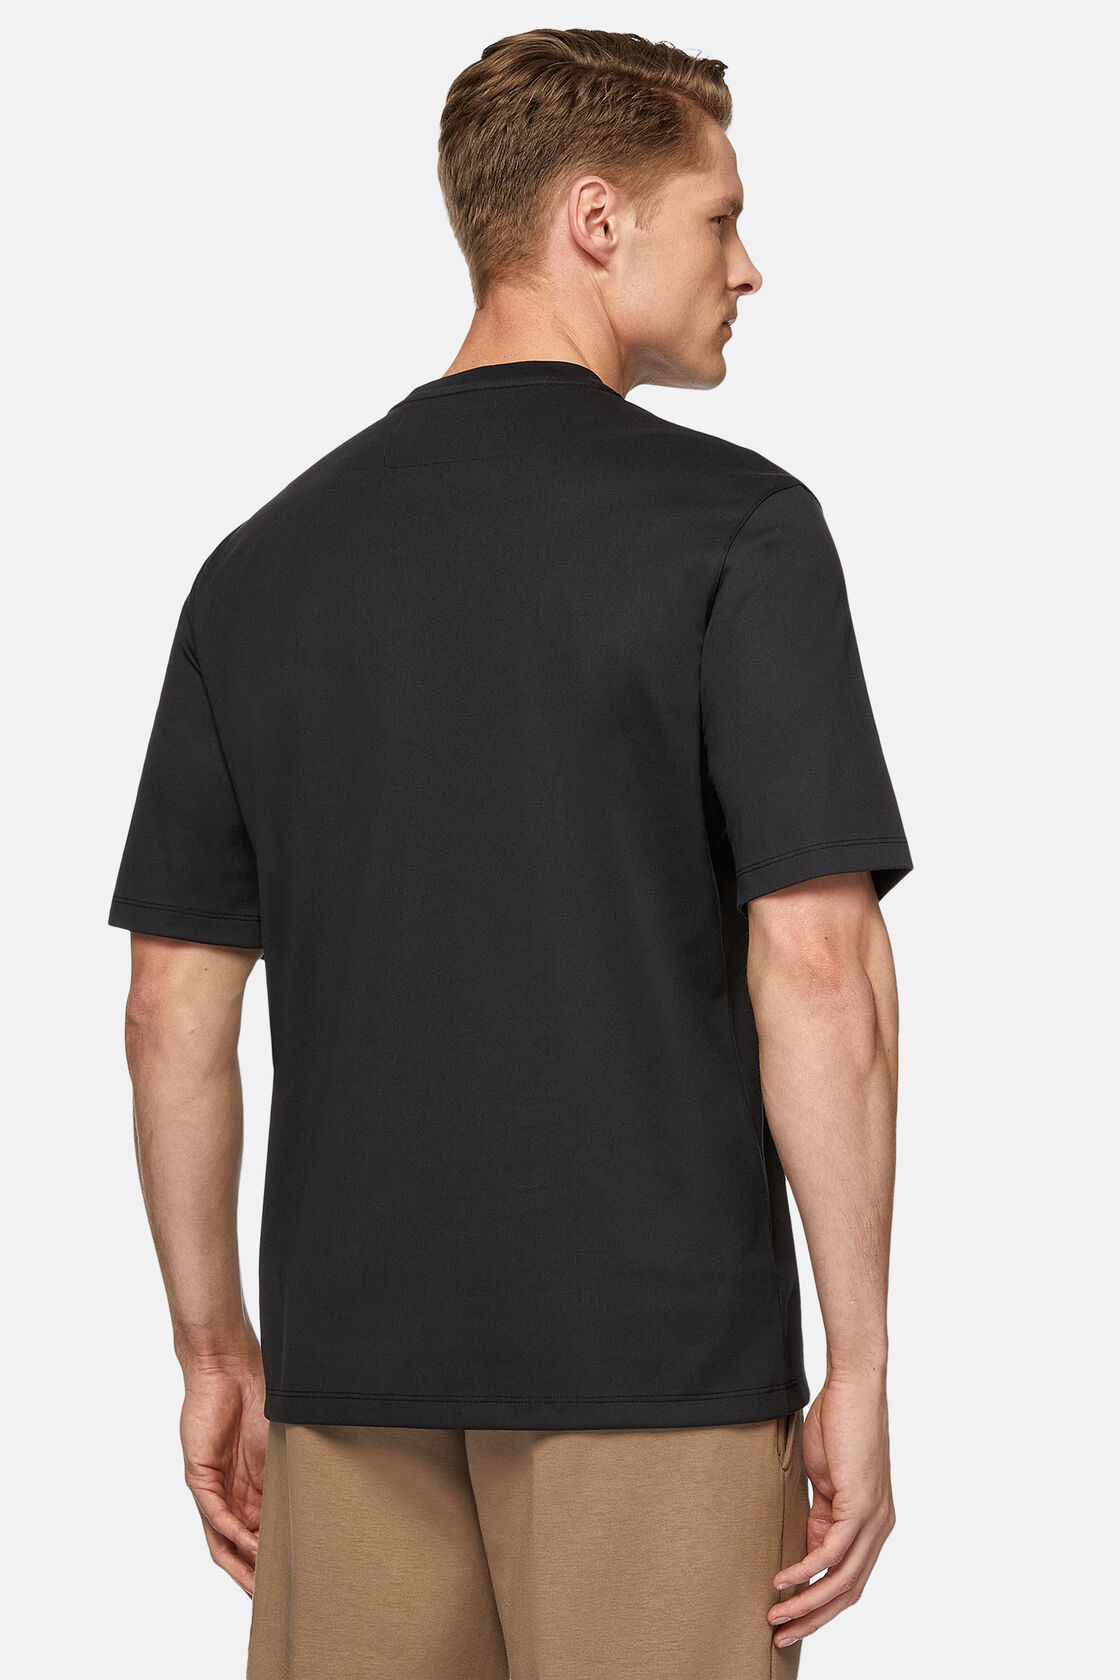 Κοντομάνικο μπλουζάκι από ζέρσεϊ υψηλών επιδόσεων, Charcoal, hi-res